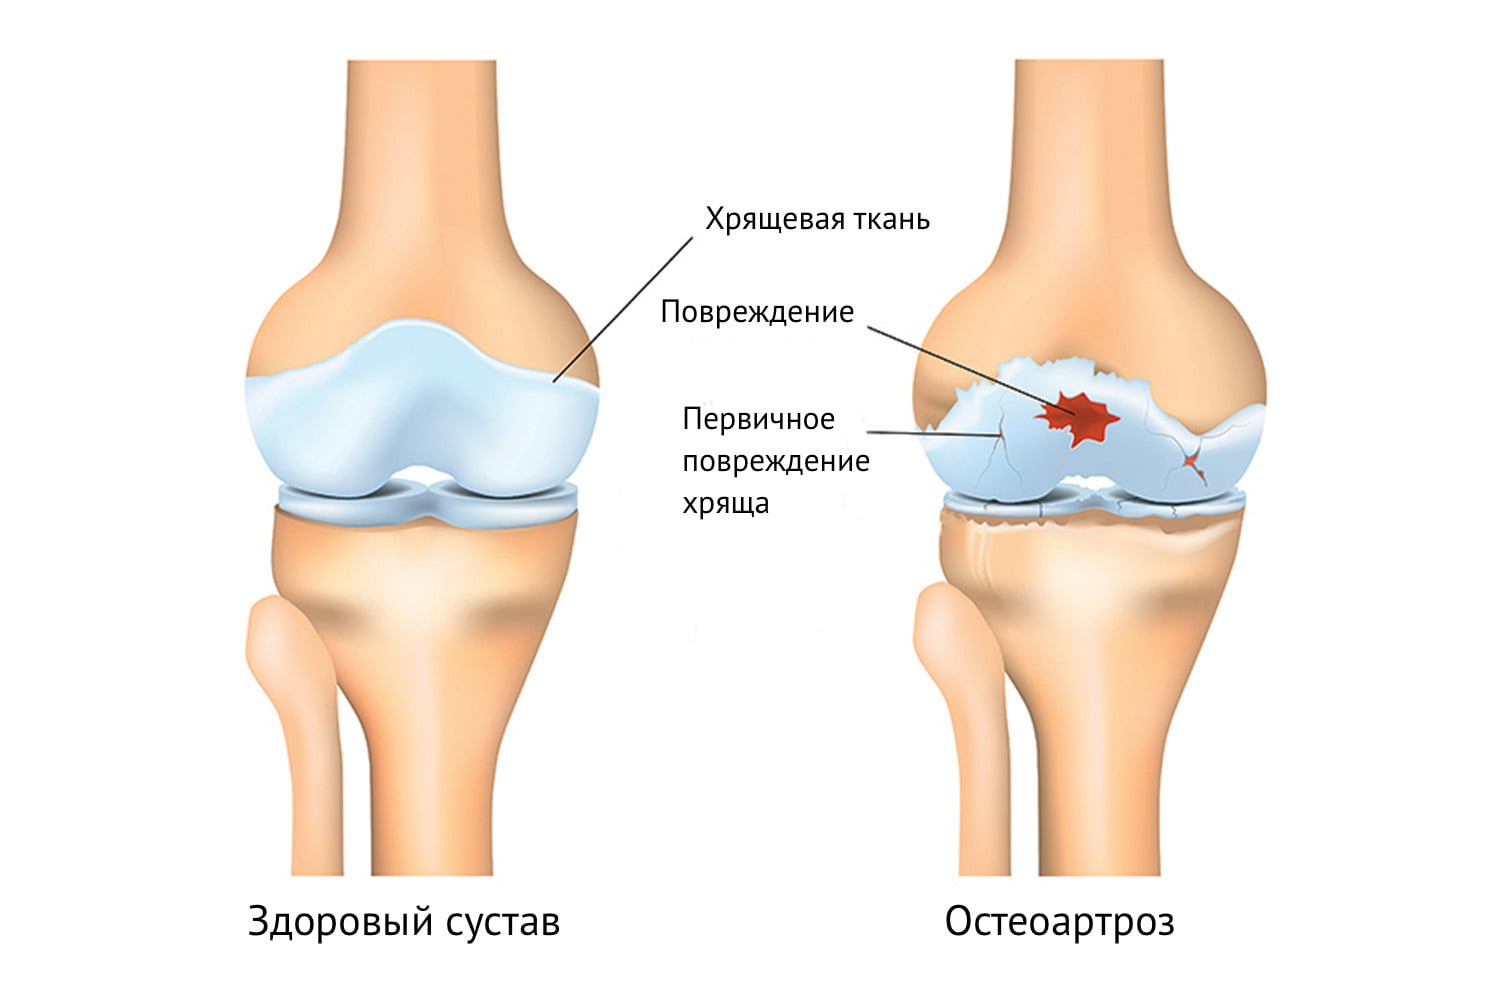 Остеоартроз - лечение по уникальной методике в Москве